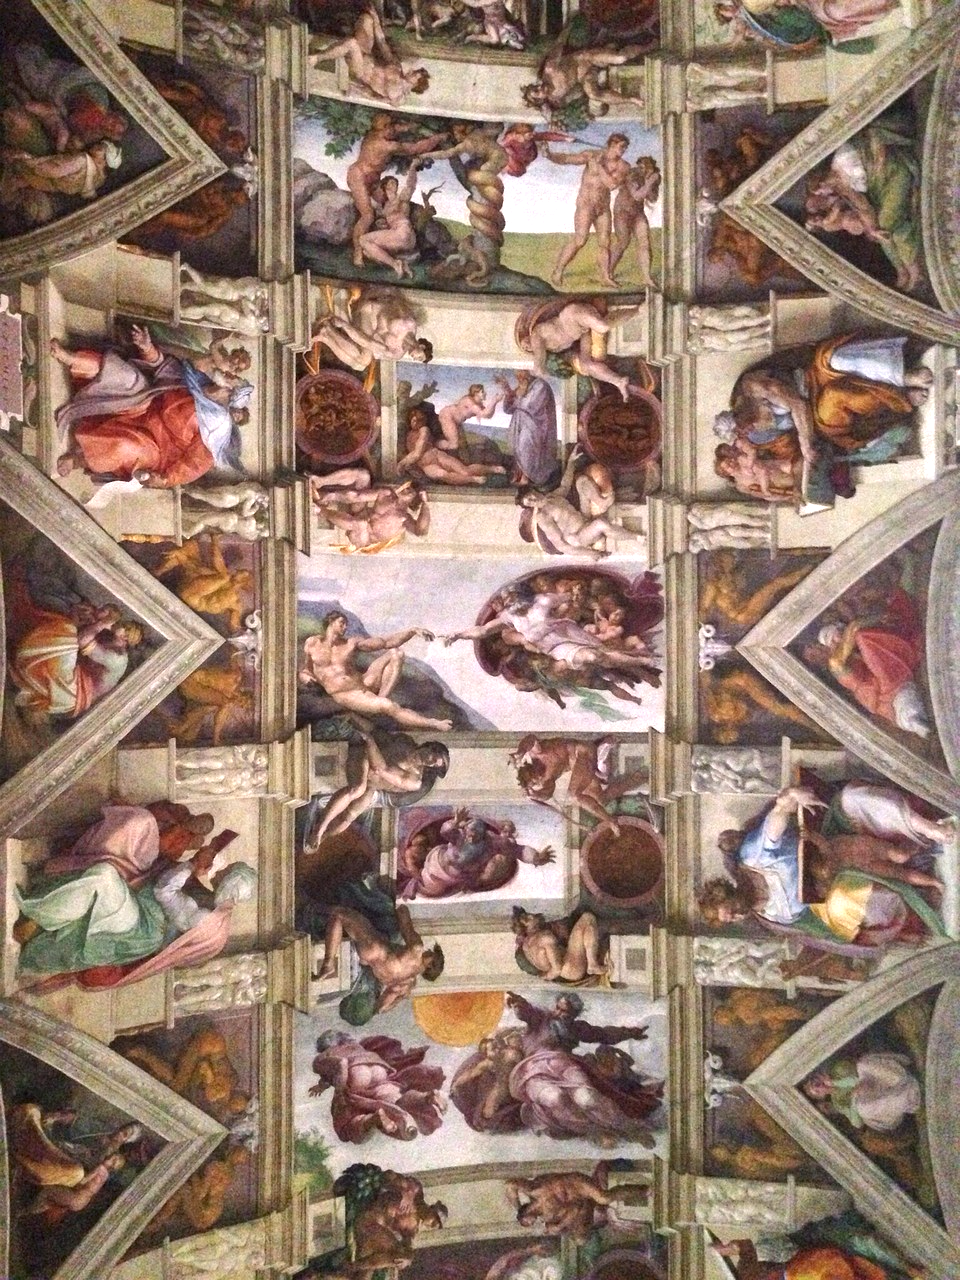 Ba phần chính của bức tranh ở trần Nhà nguyện Sistina của Michelangelo. (Ảnh: Tài sản công)